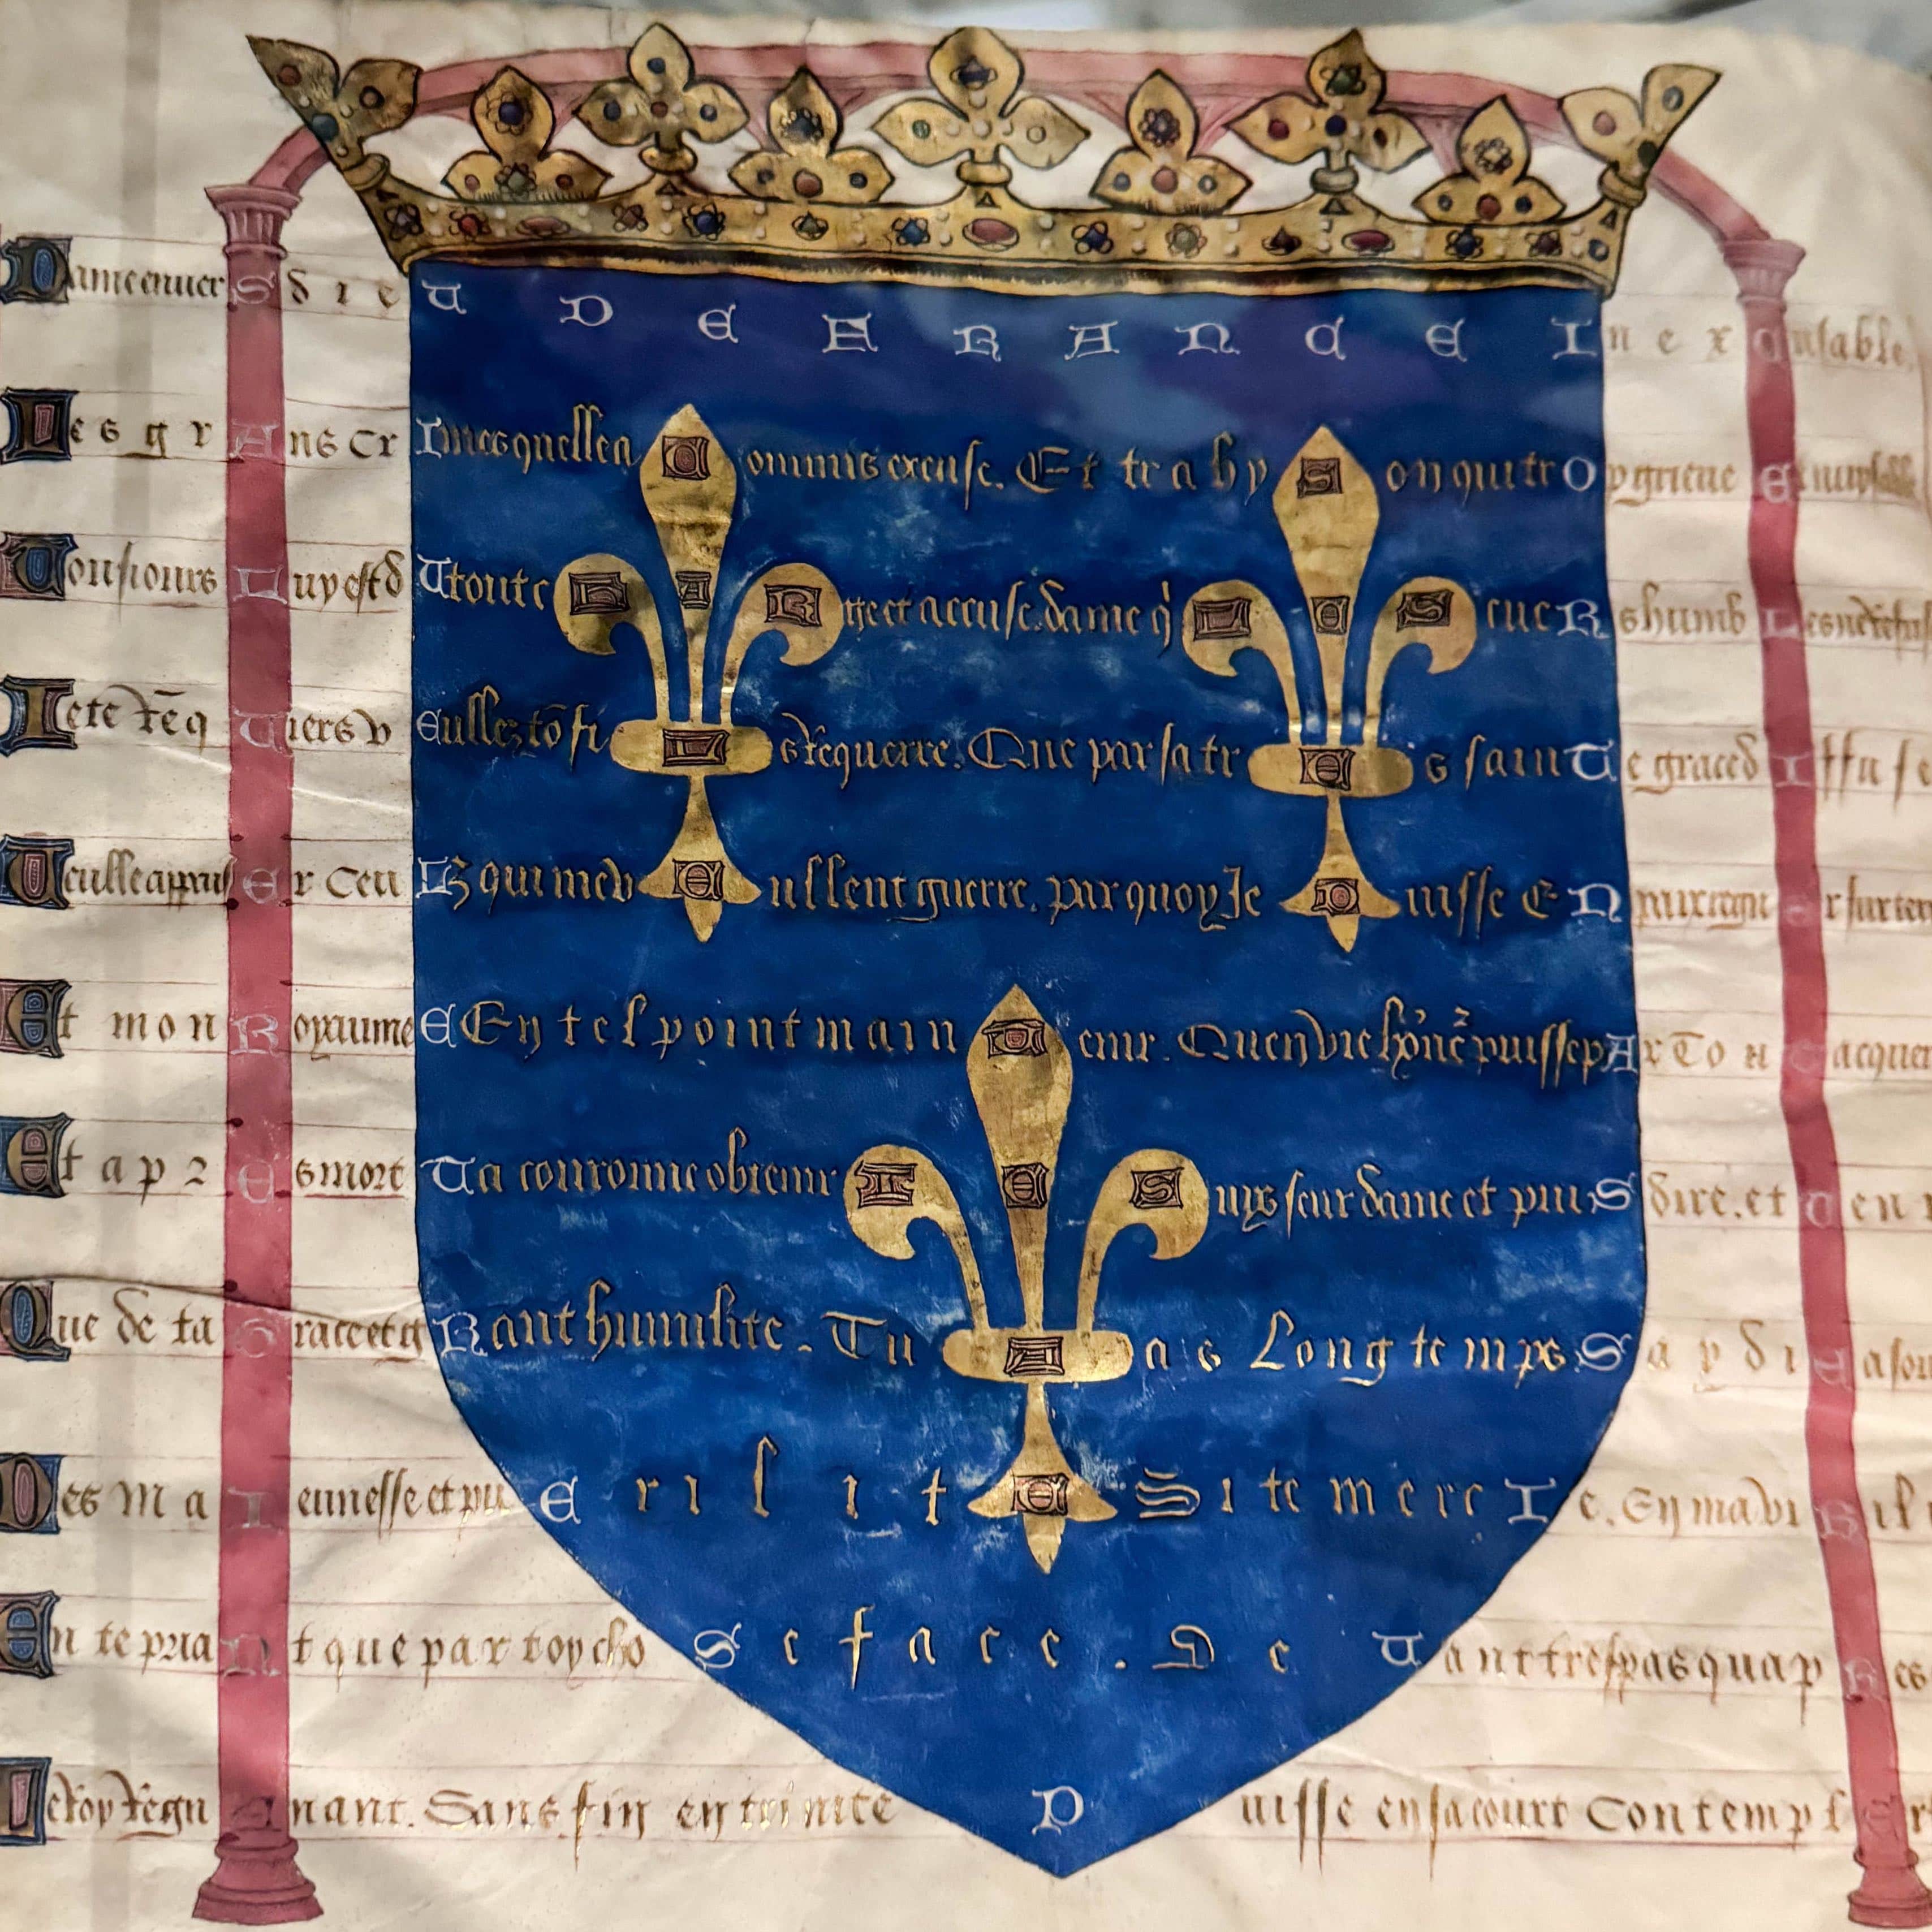 Recueil poétique (1460), Colin d’Amiens, BNF, Paris